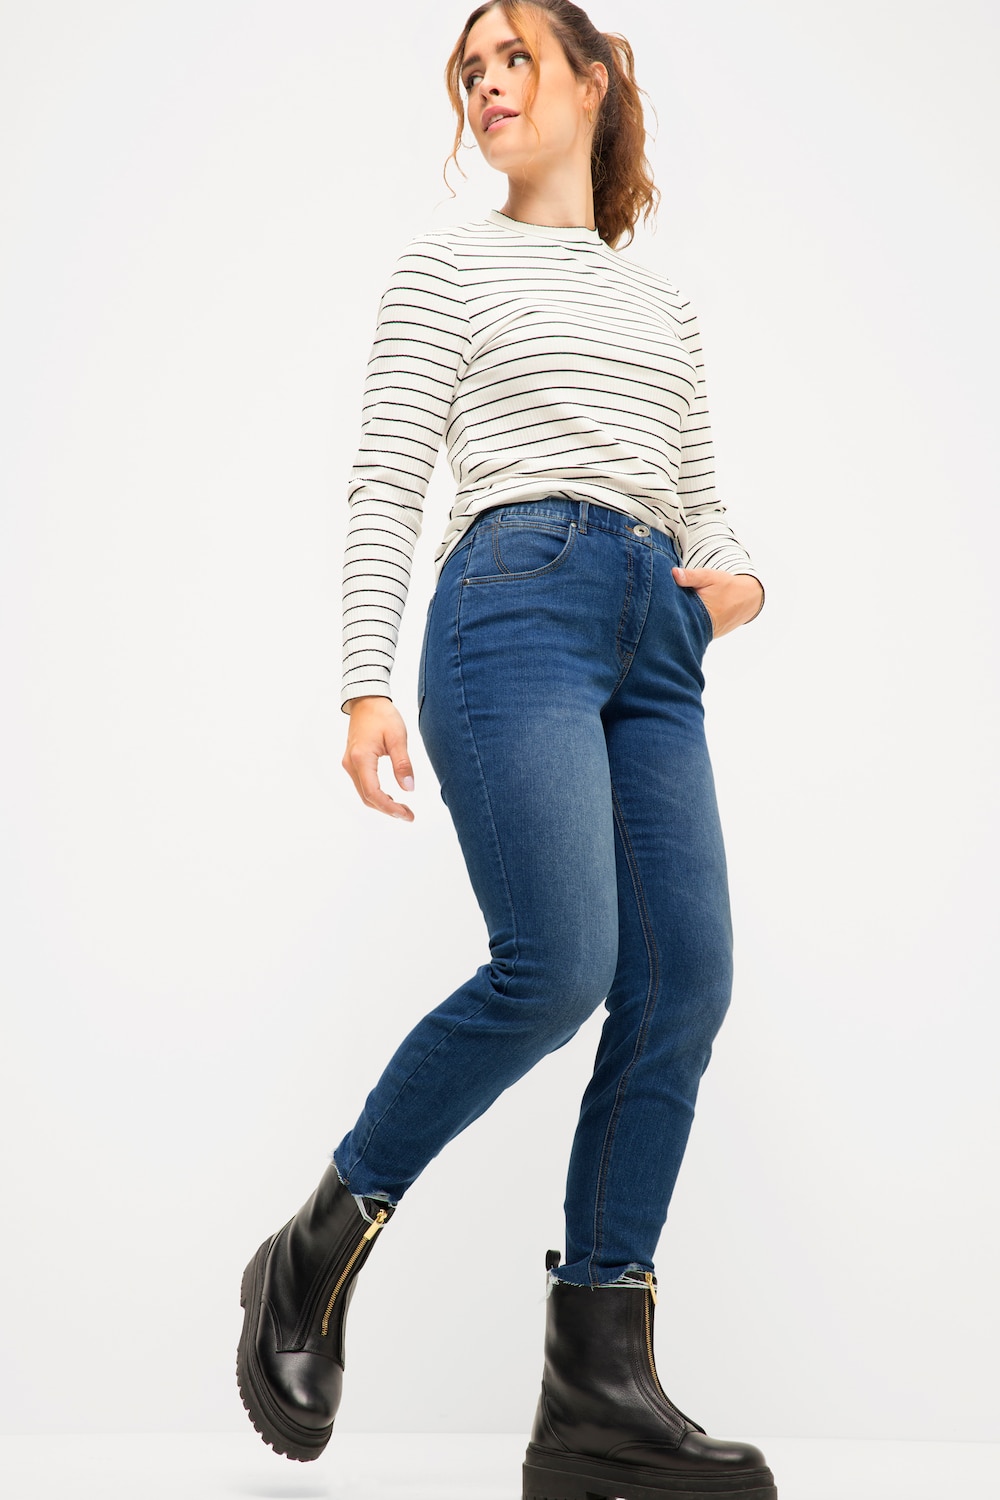 Grote Maten Skinny jeans, Dames, blauw, Maat: 52, Katoen/Polyester, Studio Untold